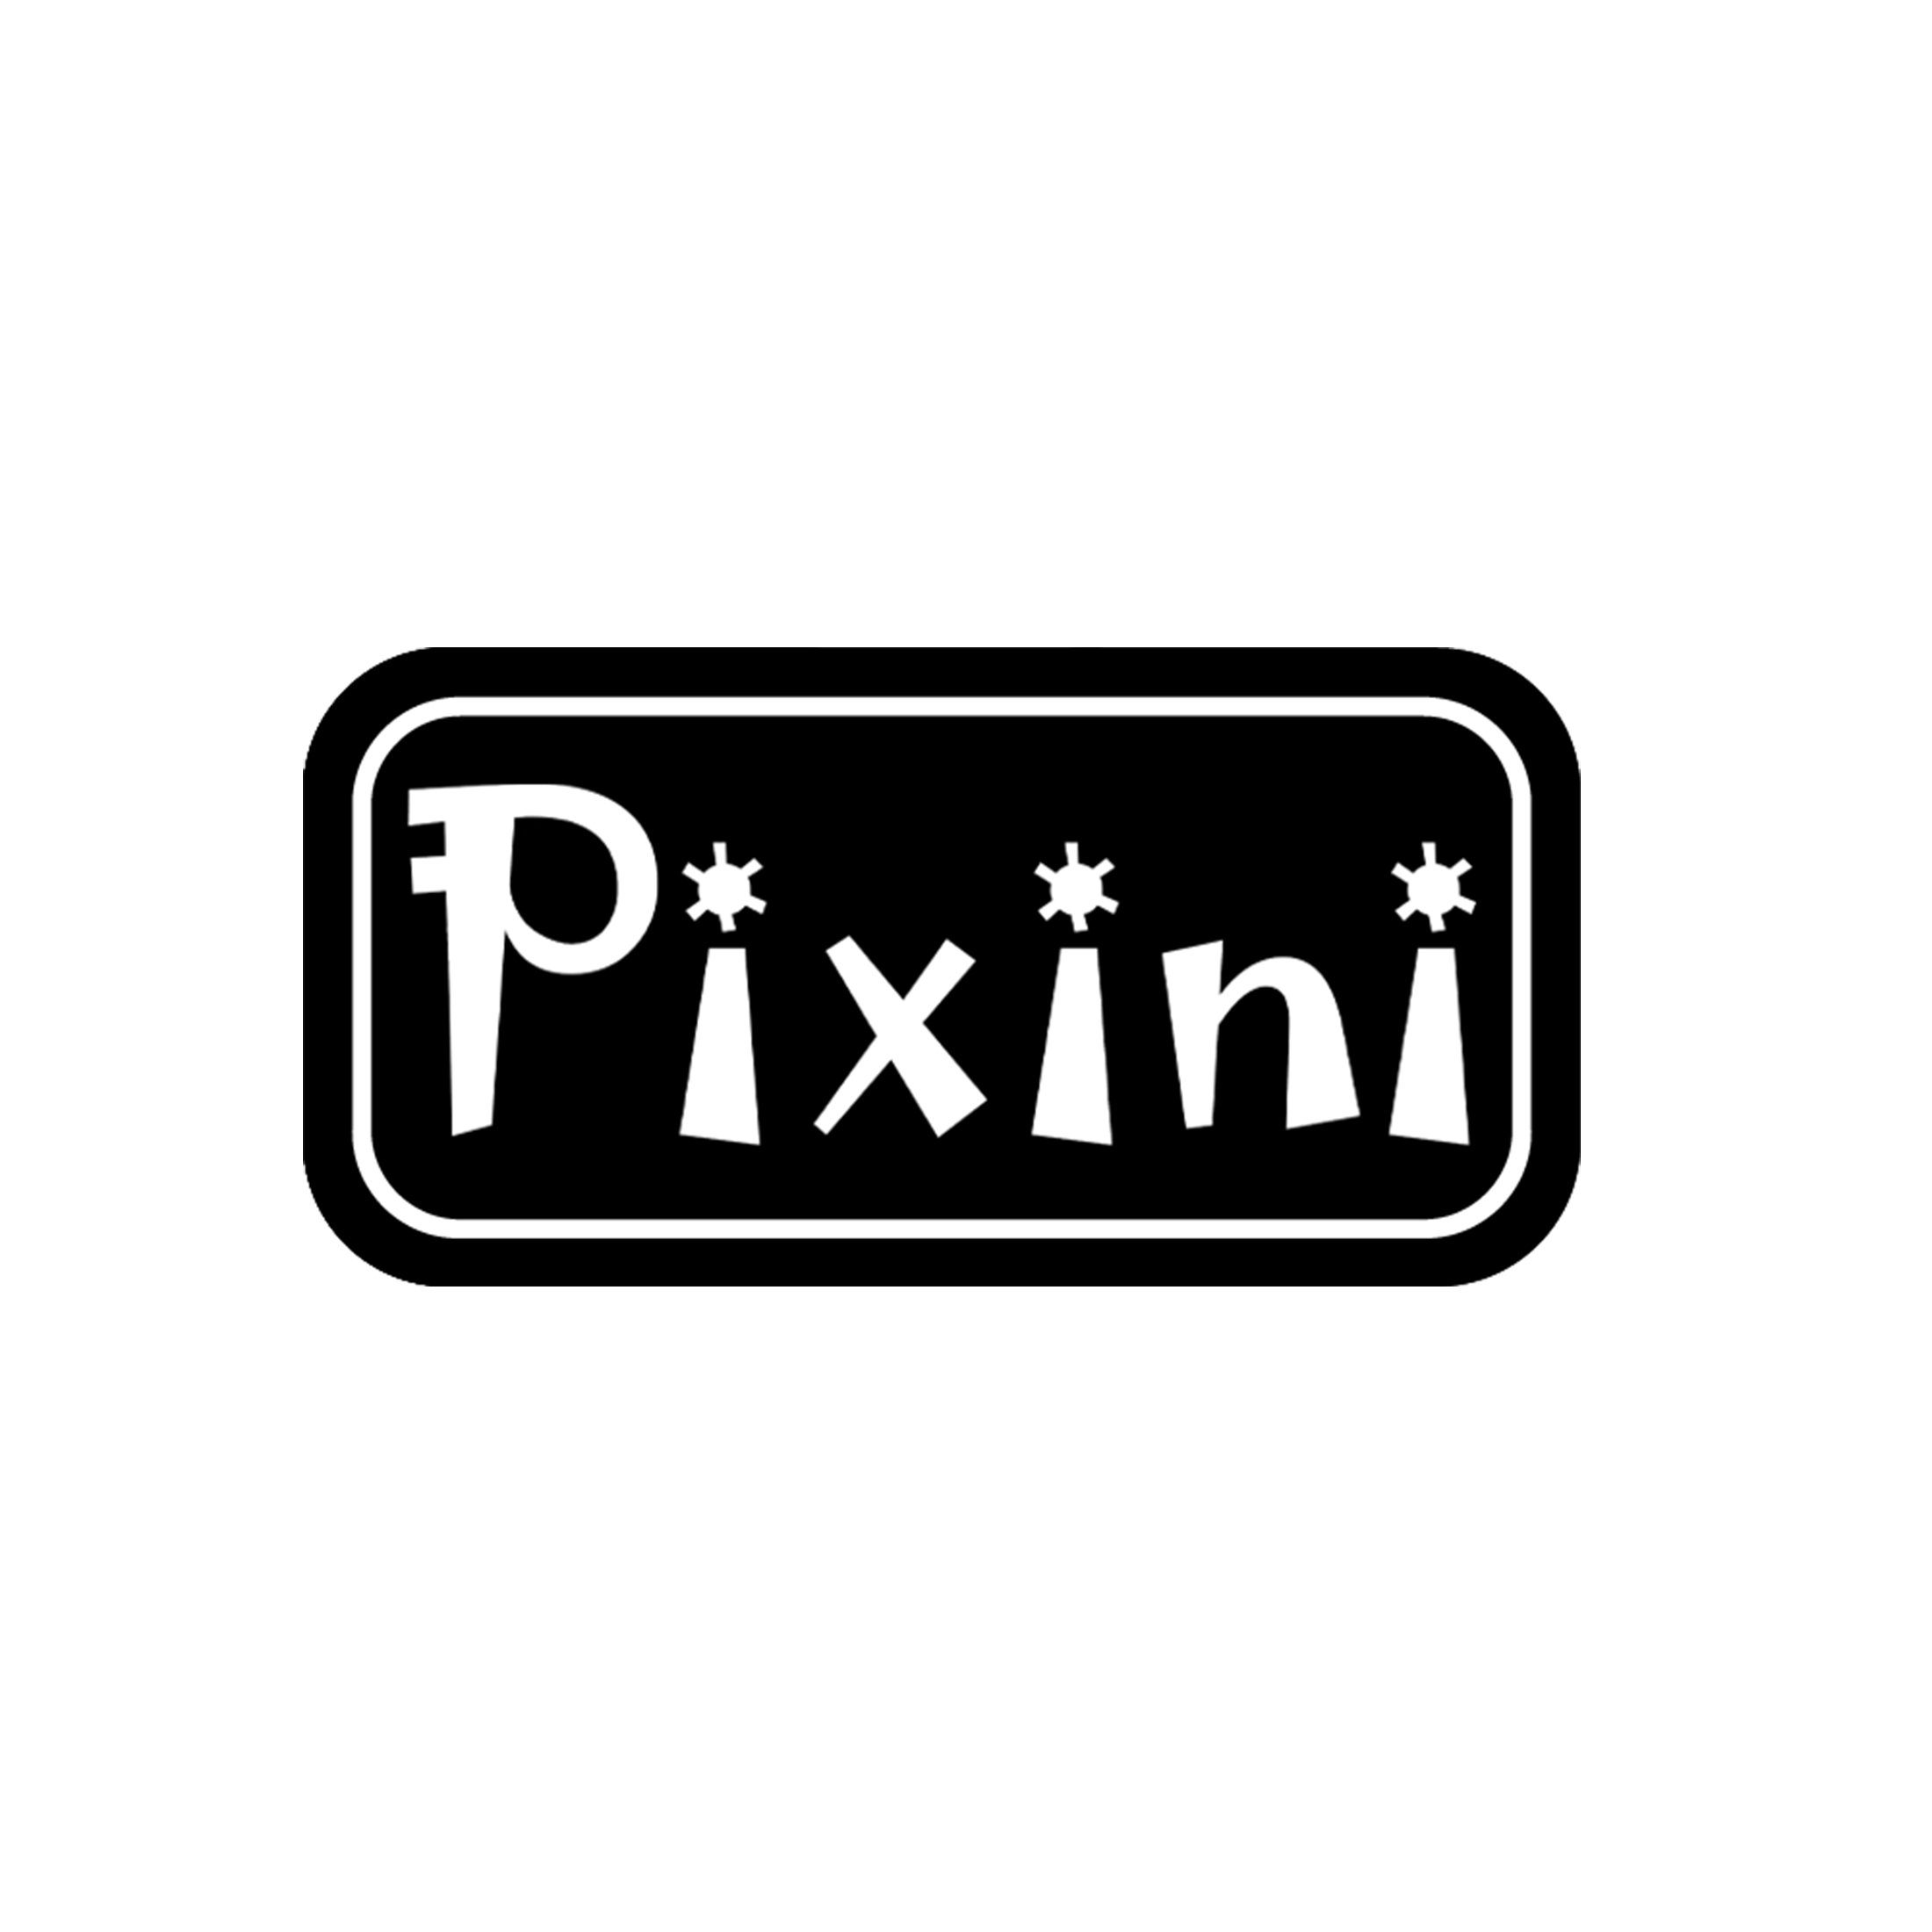 Pixini